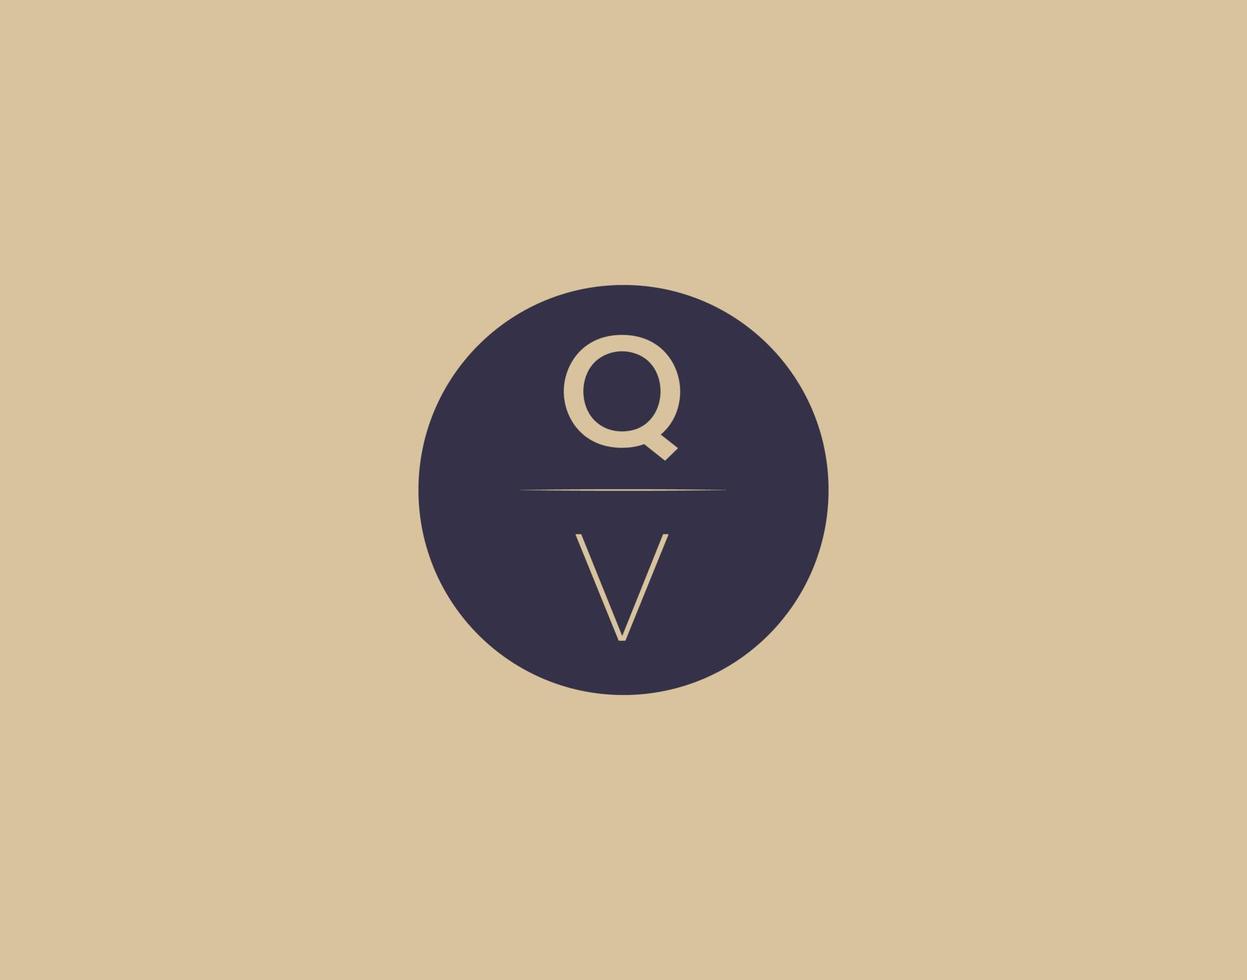 QV letter modern elegant logo design vector images